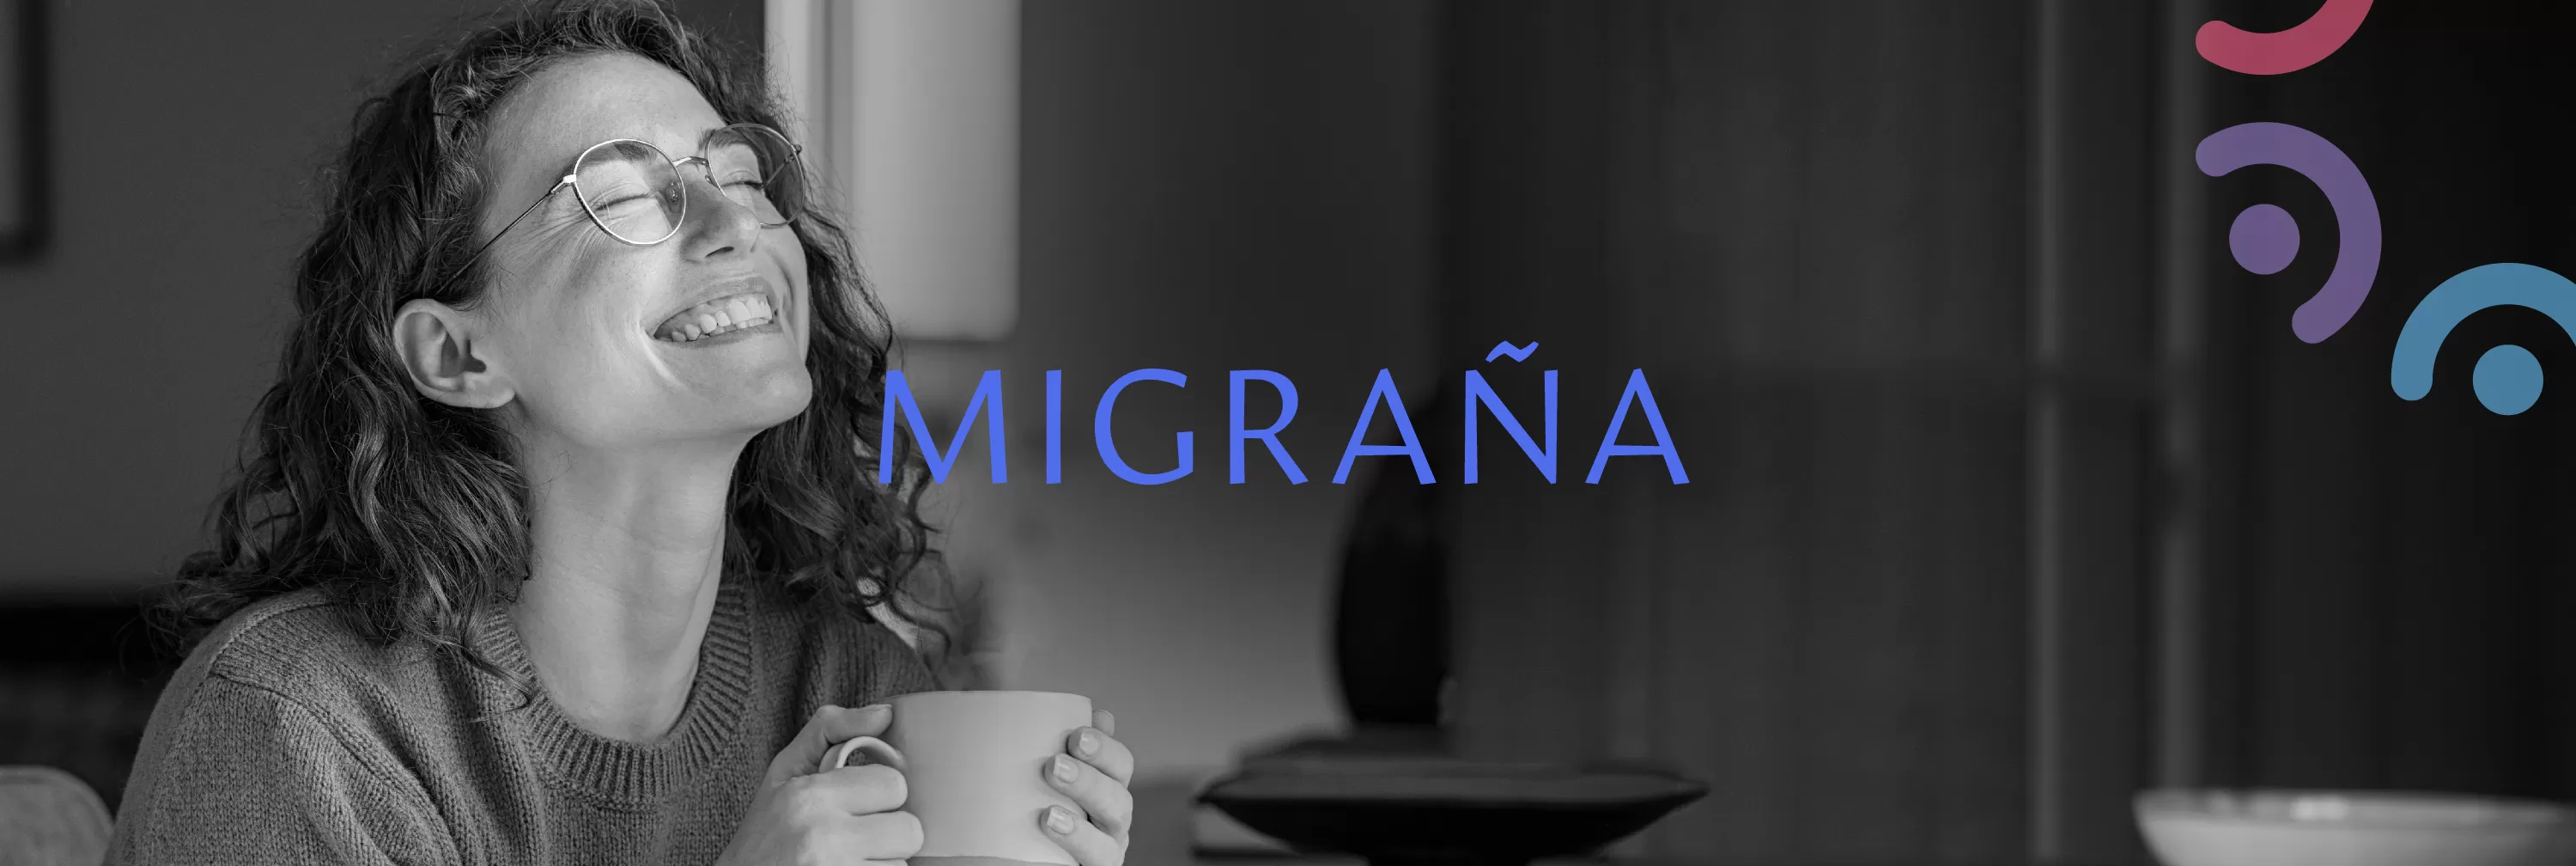 ¿Cómo podemos tratar la migraña?